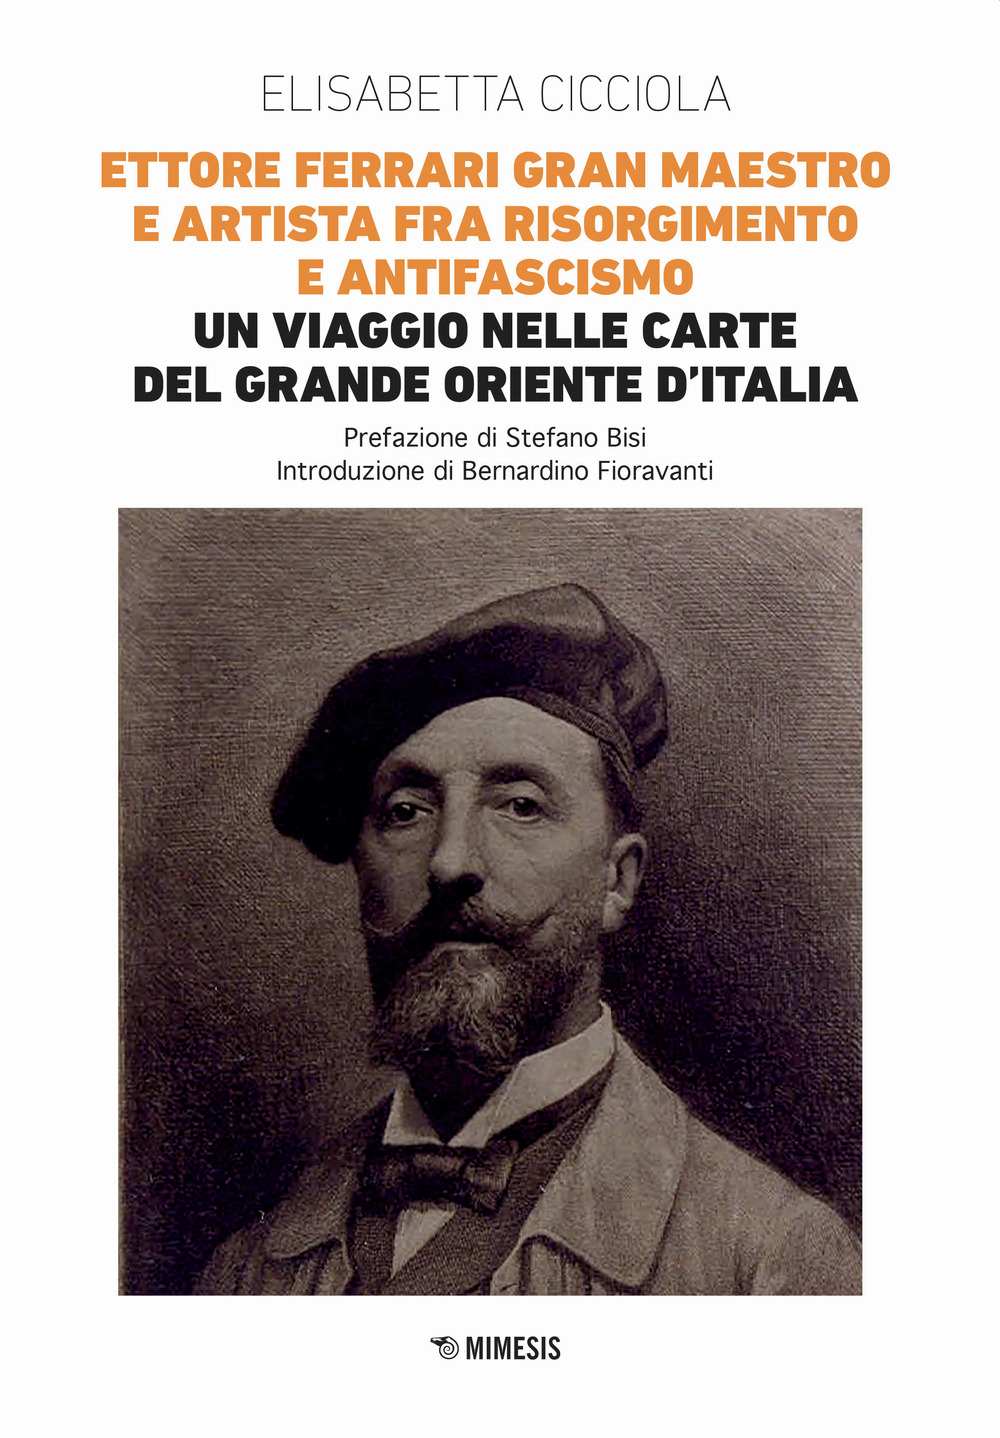 Ettore Ferrari Gran Maestro e artista fra Risorgimento e antifascismo. Un viaggio nelle carte del Grande Oriente d'Italia